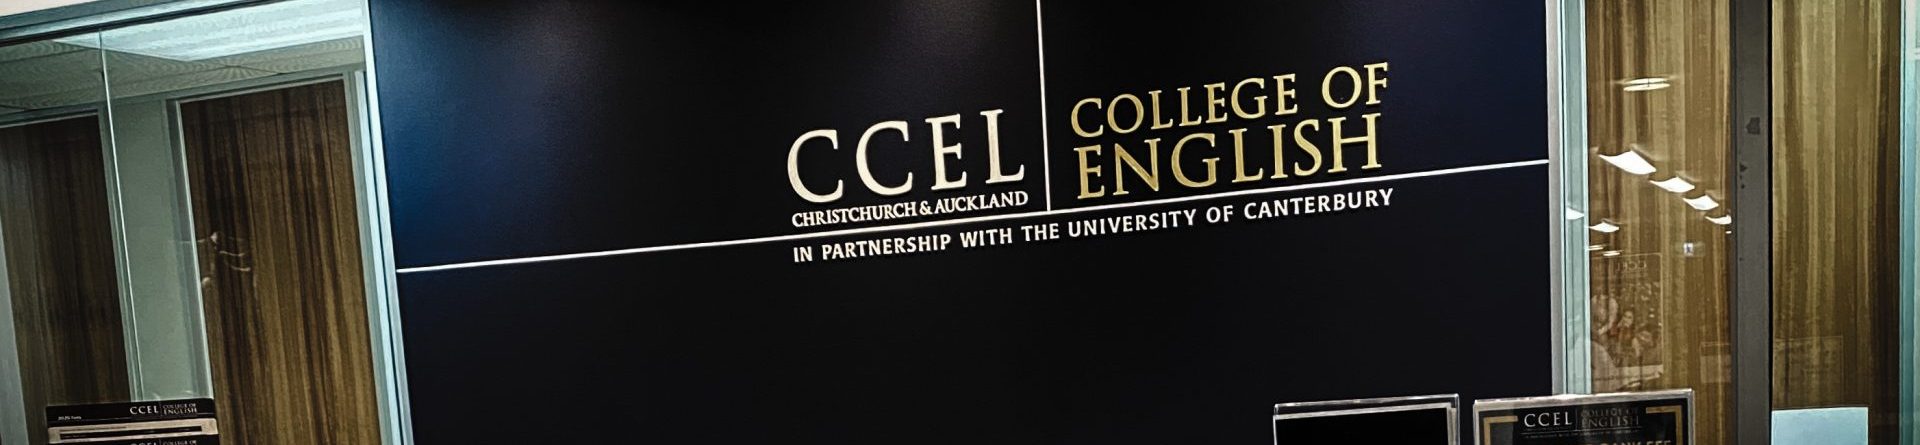 Estude inglês na CCEL com preço promocional!